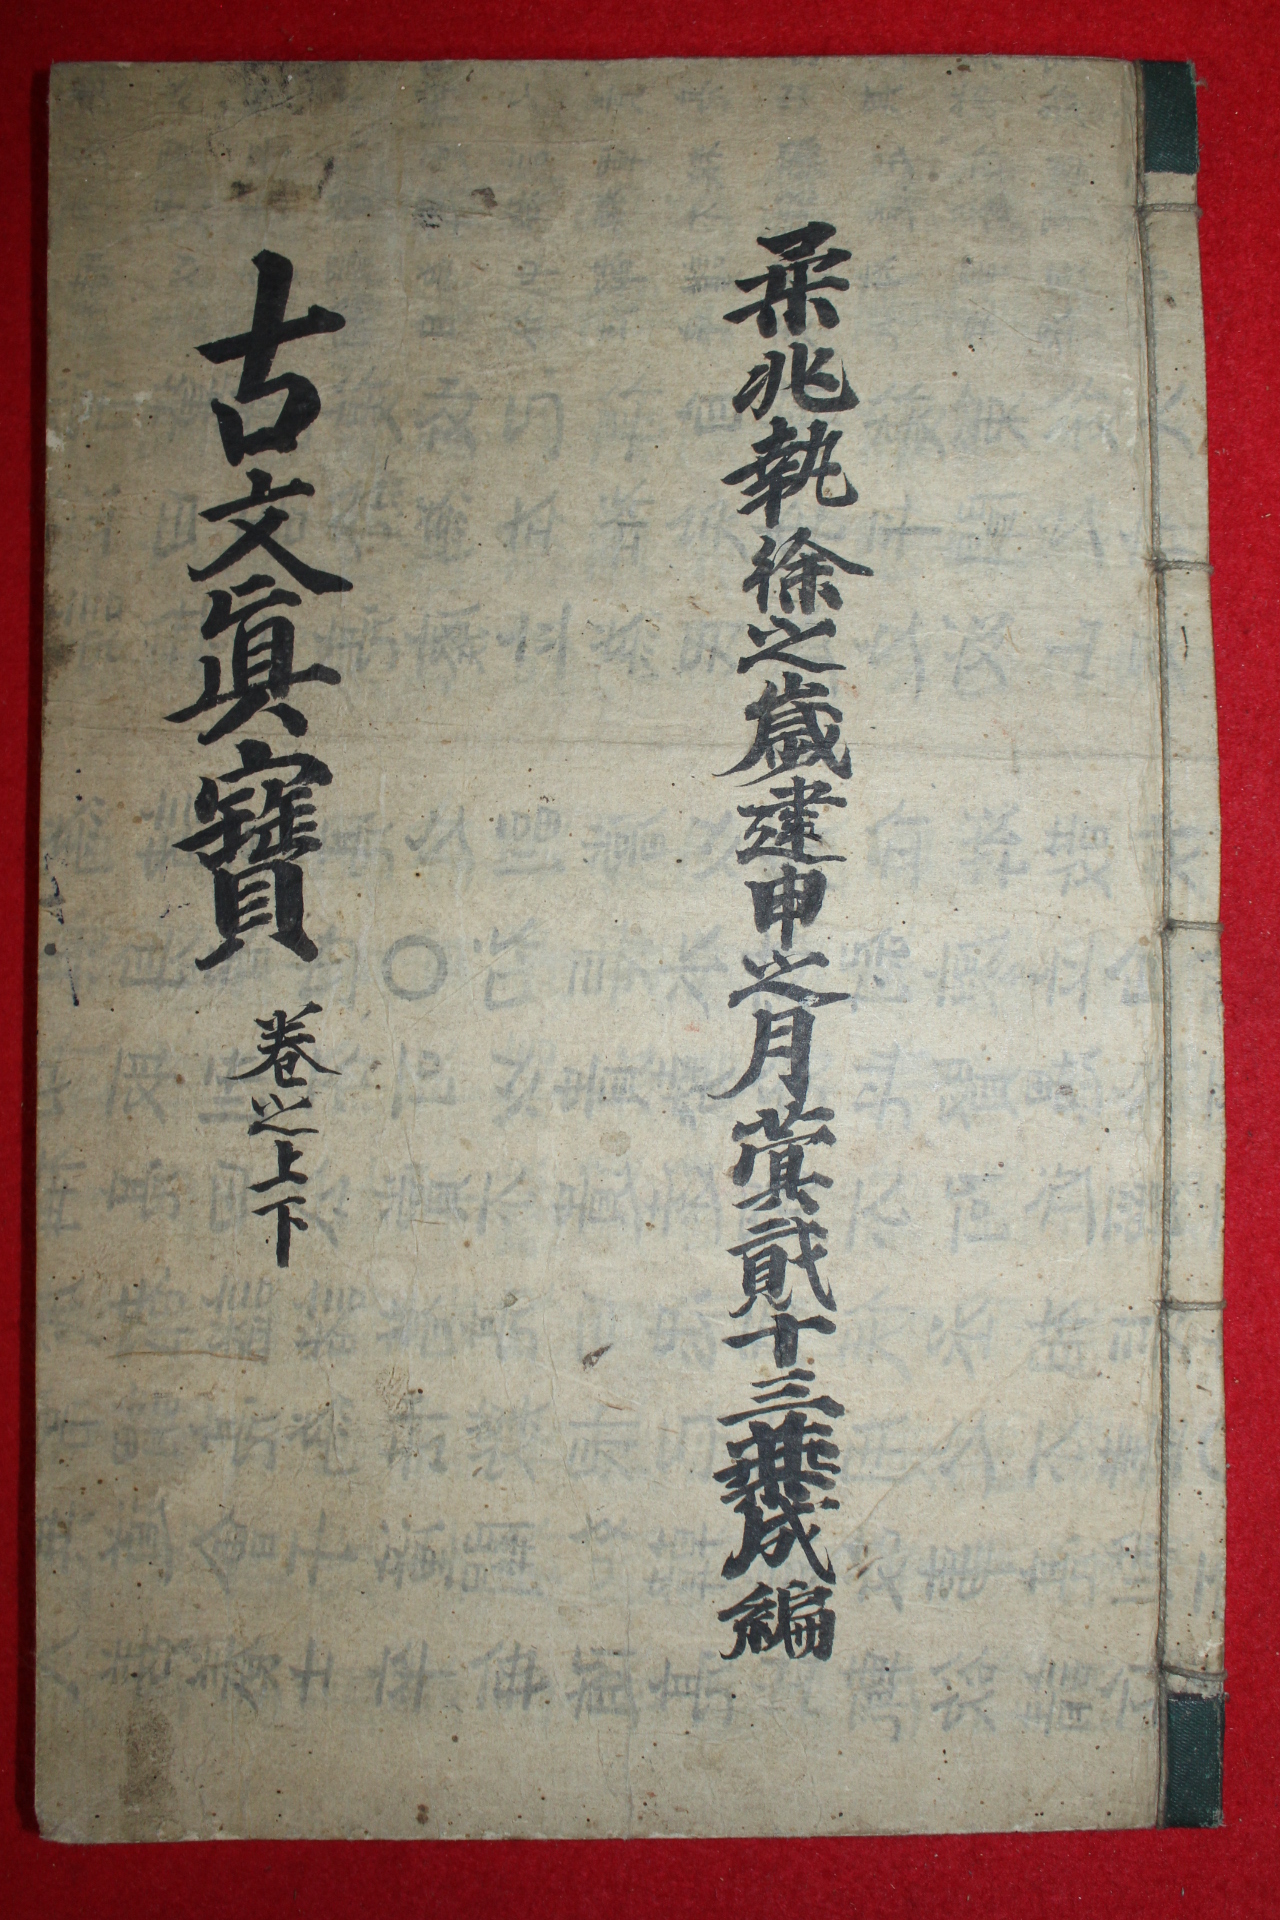 조선시대 잘정서된 필사본 당송팔대가문초(唐宋八大家文抄)